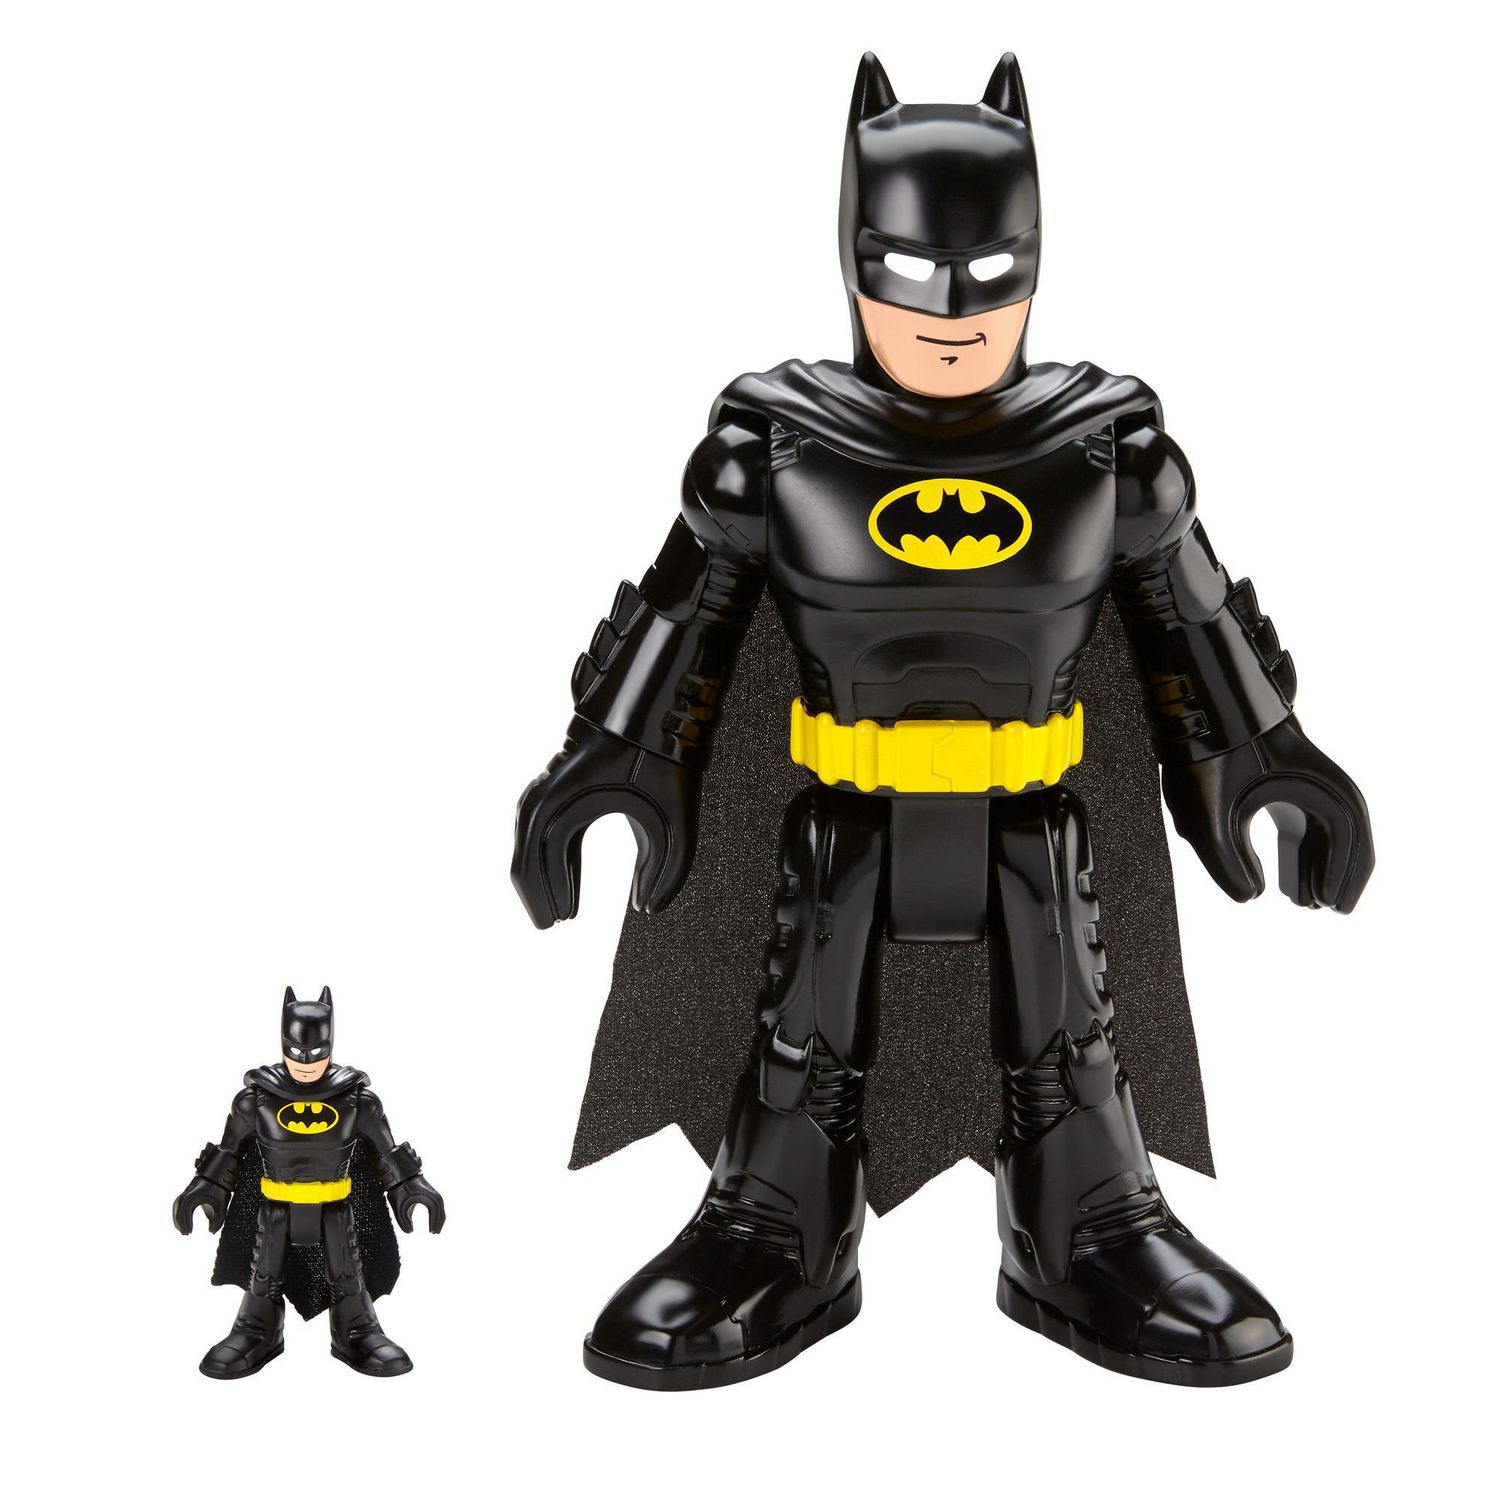 Fisher-Price Imaginext DC Super Friends Batman XL, Ages 3-8 